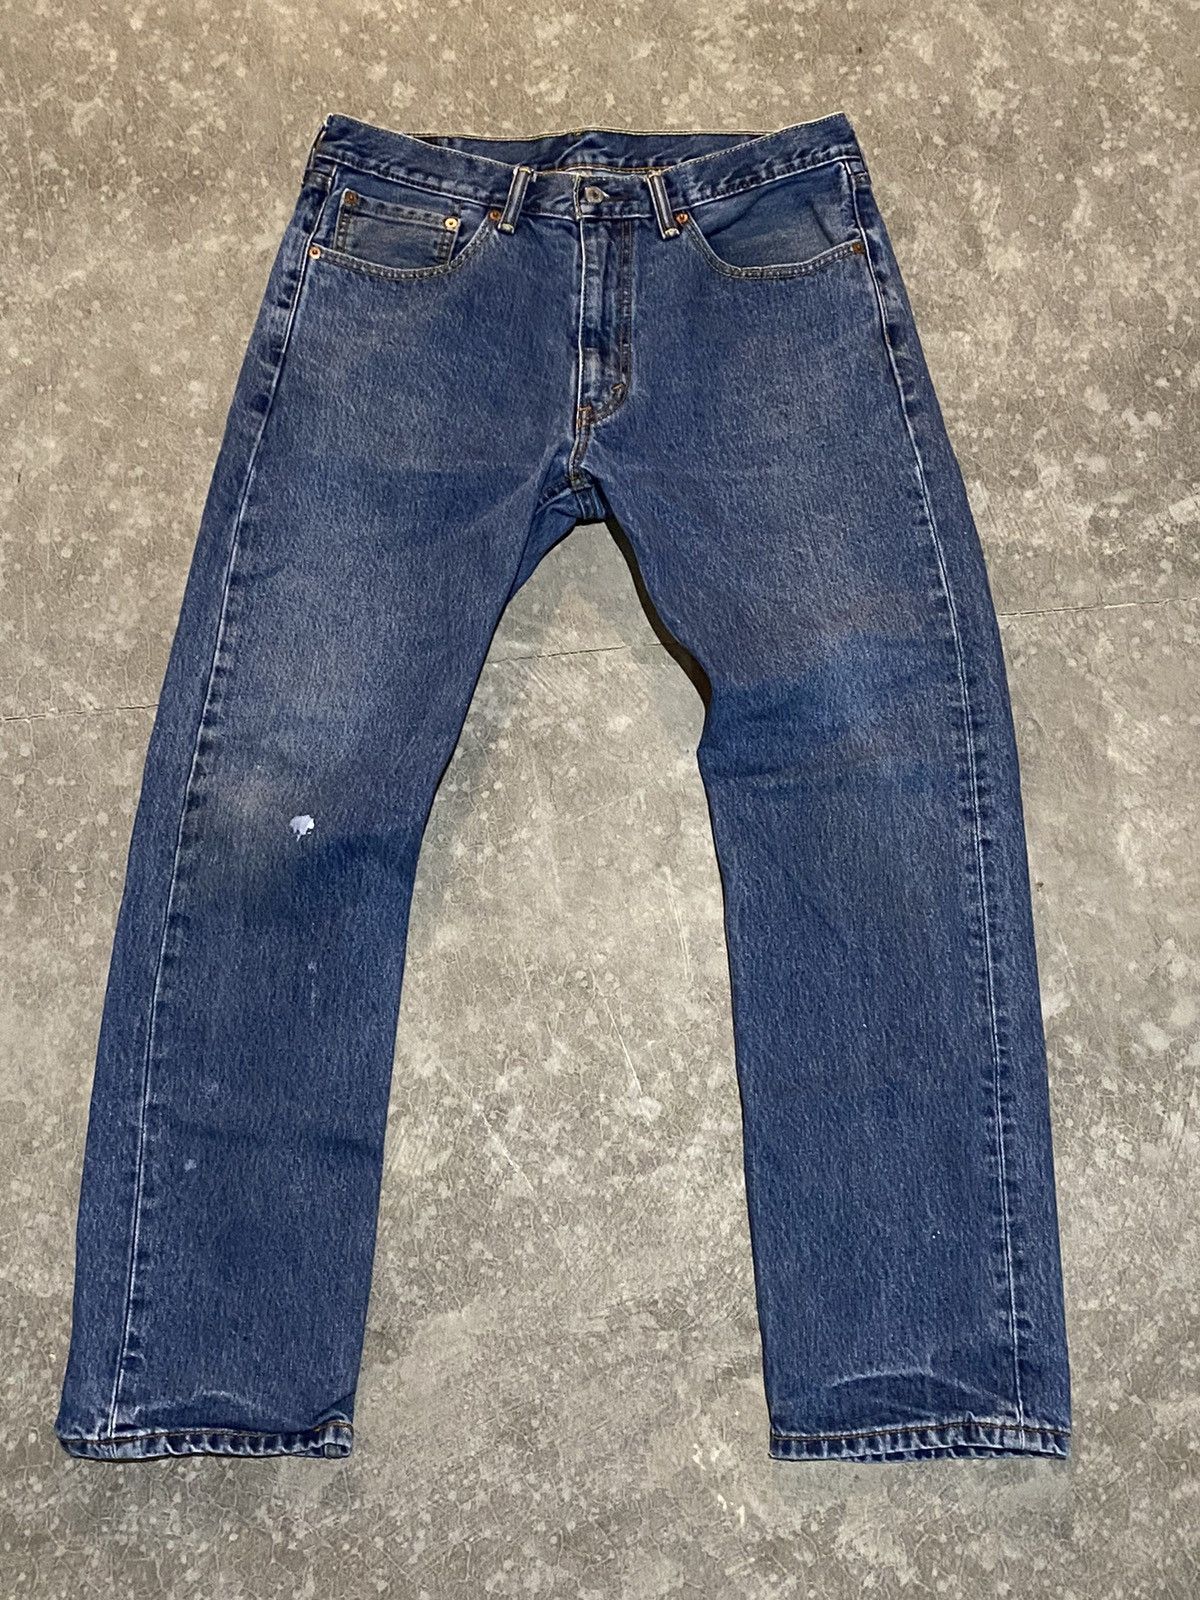 Vintage Blue Levi 505 Baggy Jeans 36x32 | Grailed